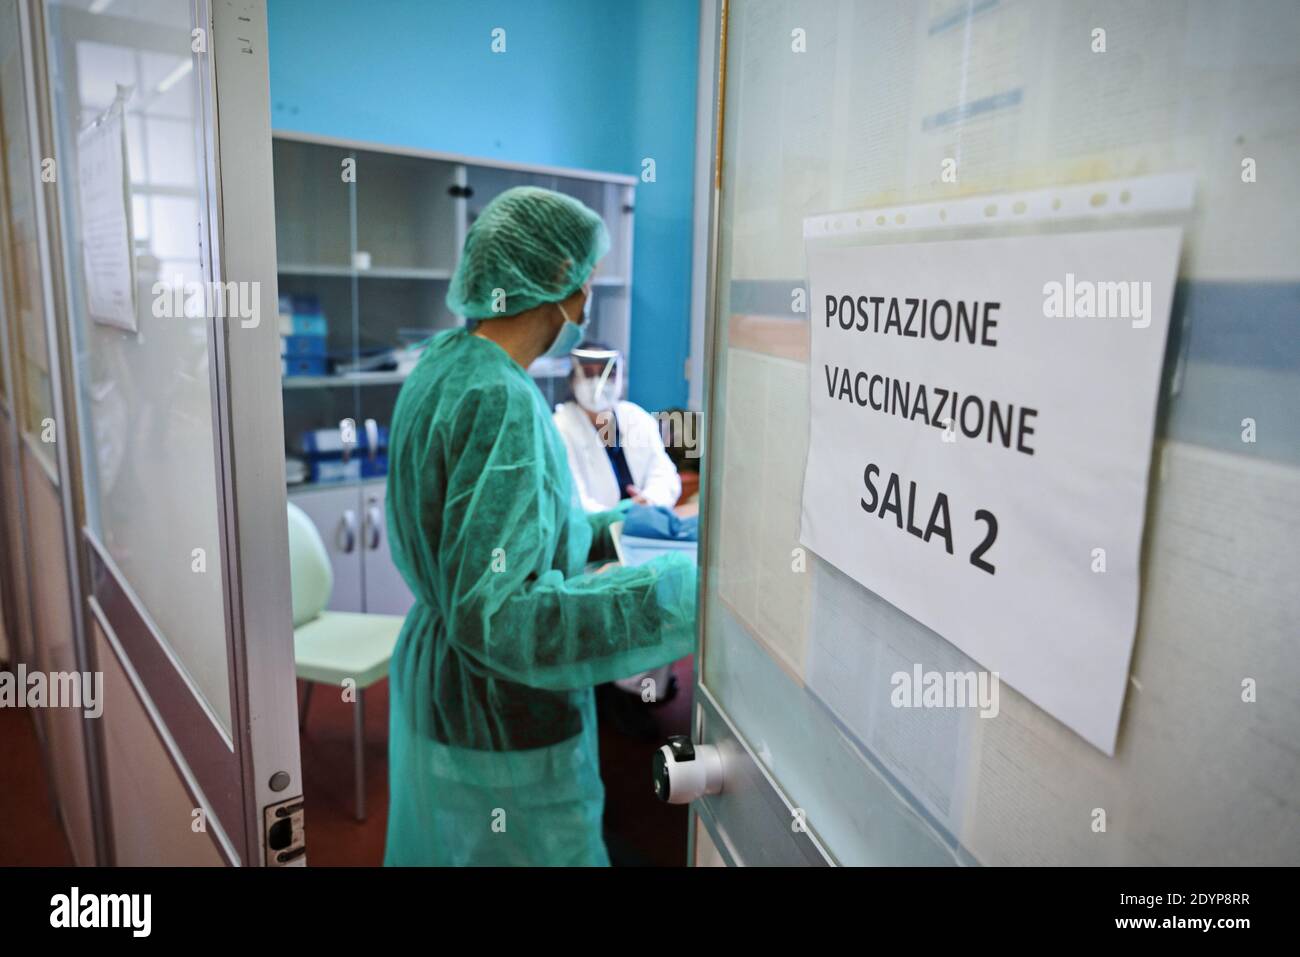 Gesundheitshelfer am ersten Tag der Impfkampagne gegen COVID 19 im Krankenhaus Amedeo di Savoia. Turin, Italien - Dezember 27, Stockfoto